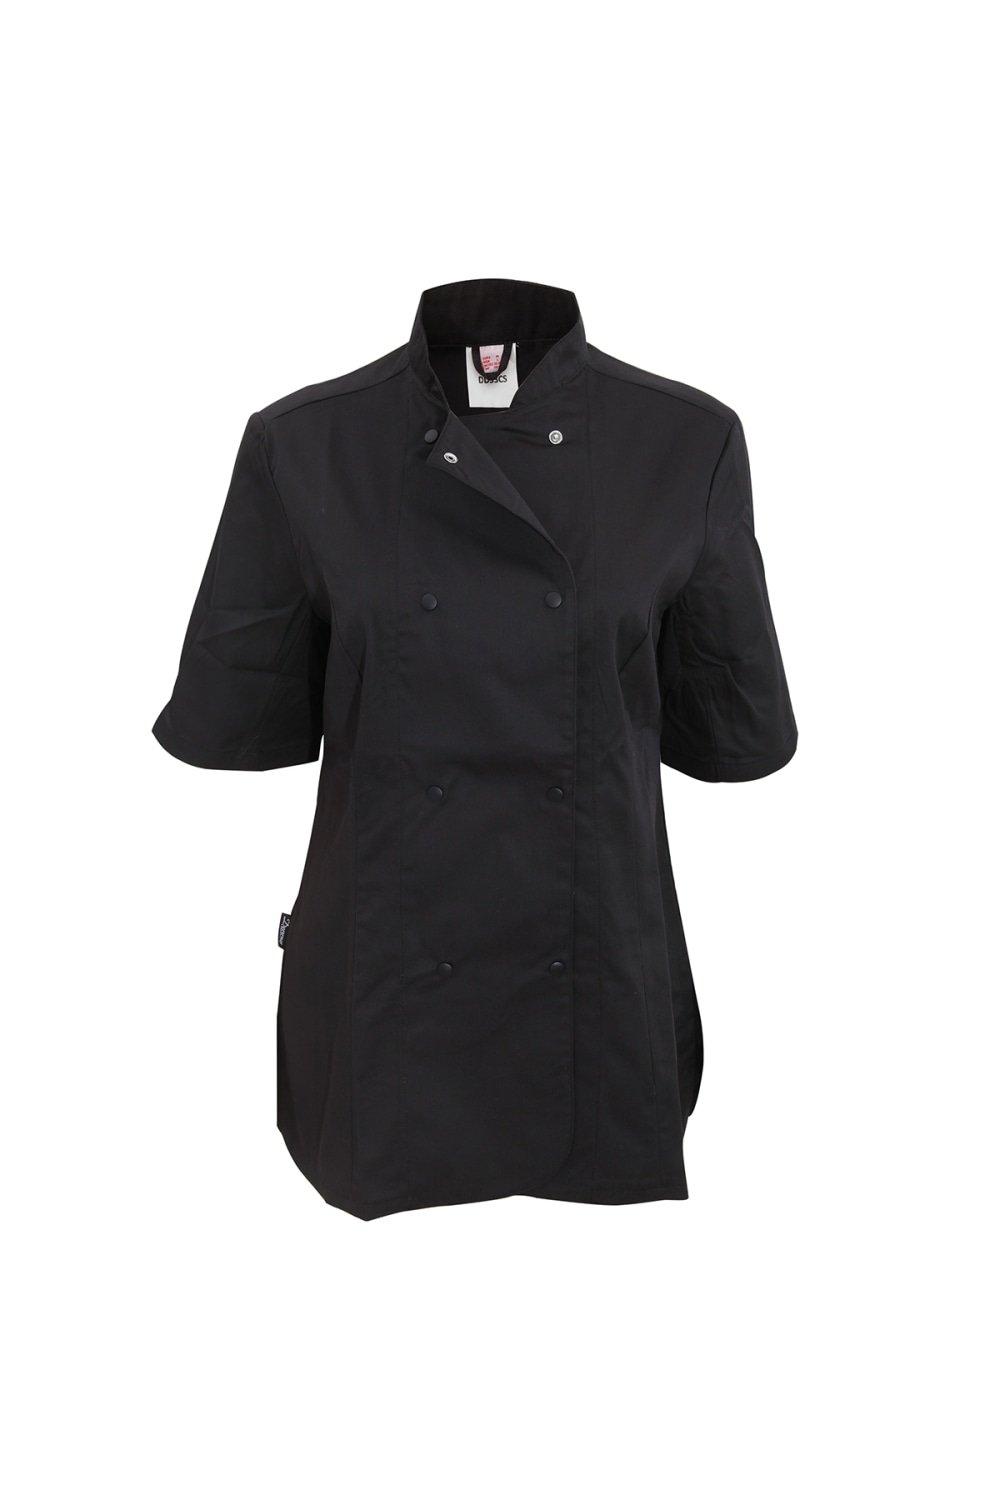 Приталенная куртка шеф-повара с короткими рукавами (2 шт.) Dennys, черный